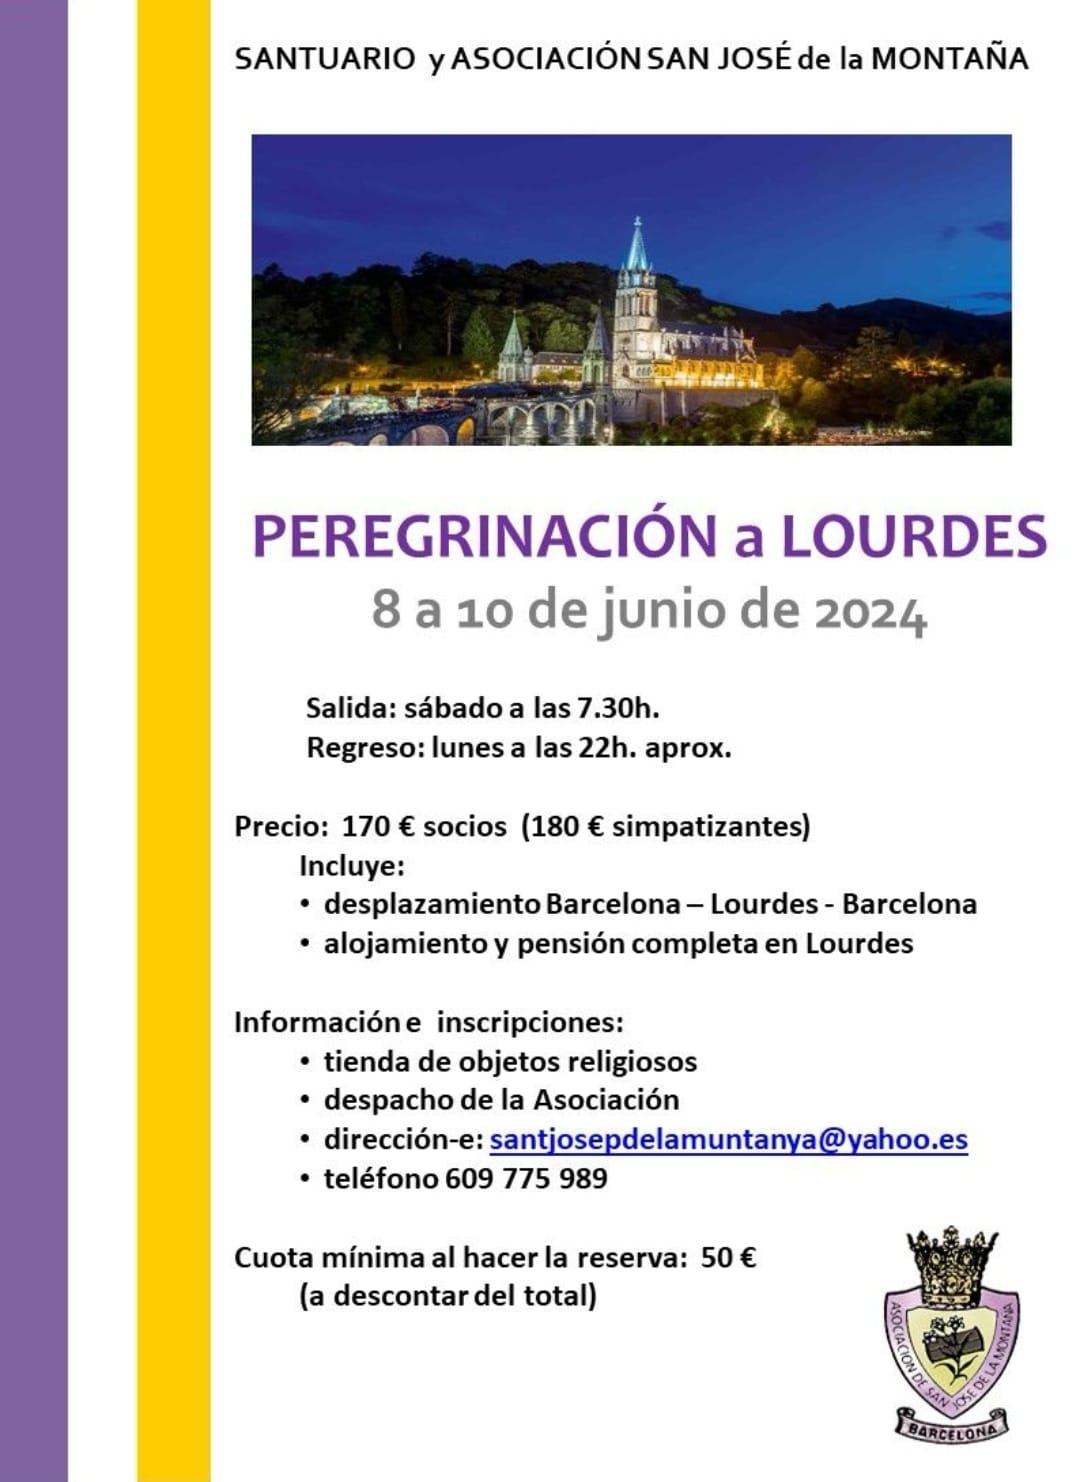 cartel de la peregrinación a Lourdes del 2024 desde el santuario san jose de la montaña